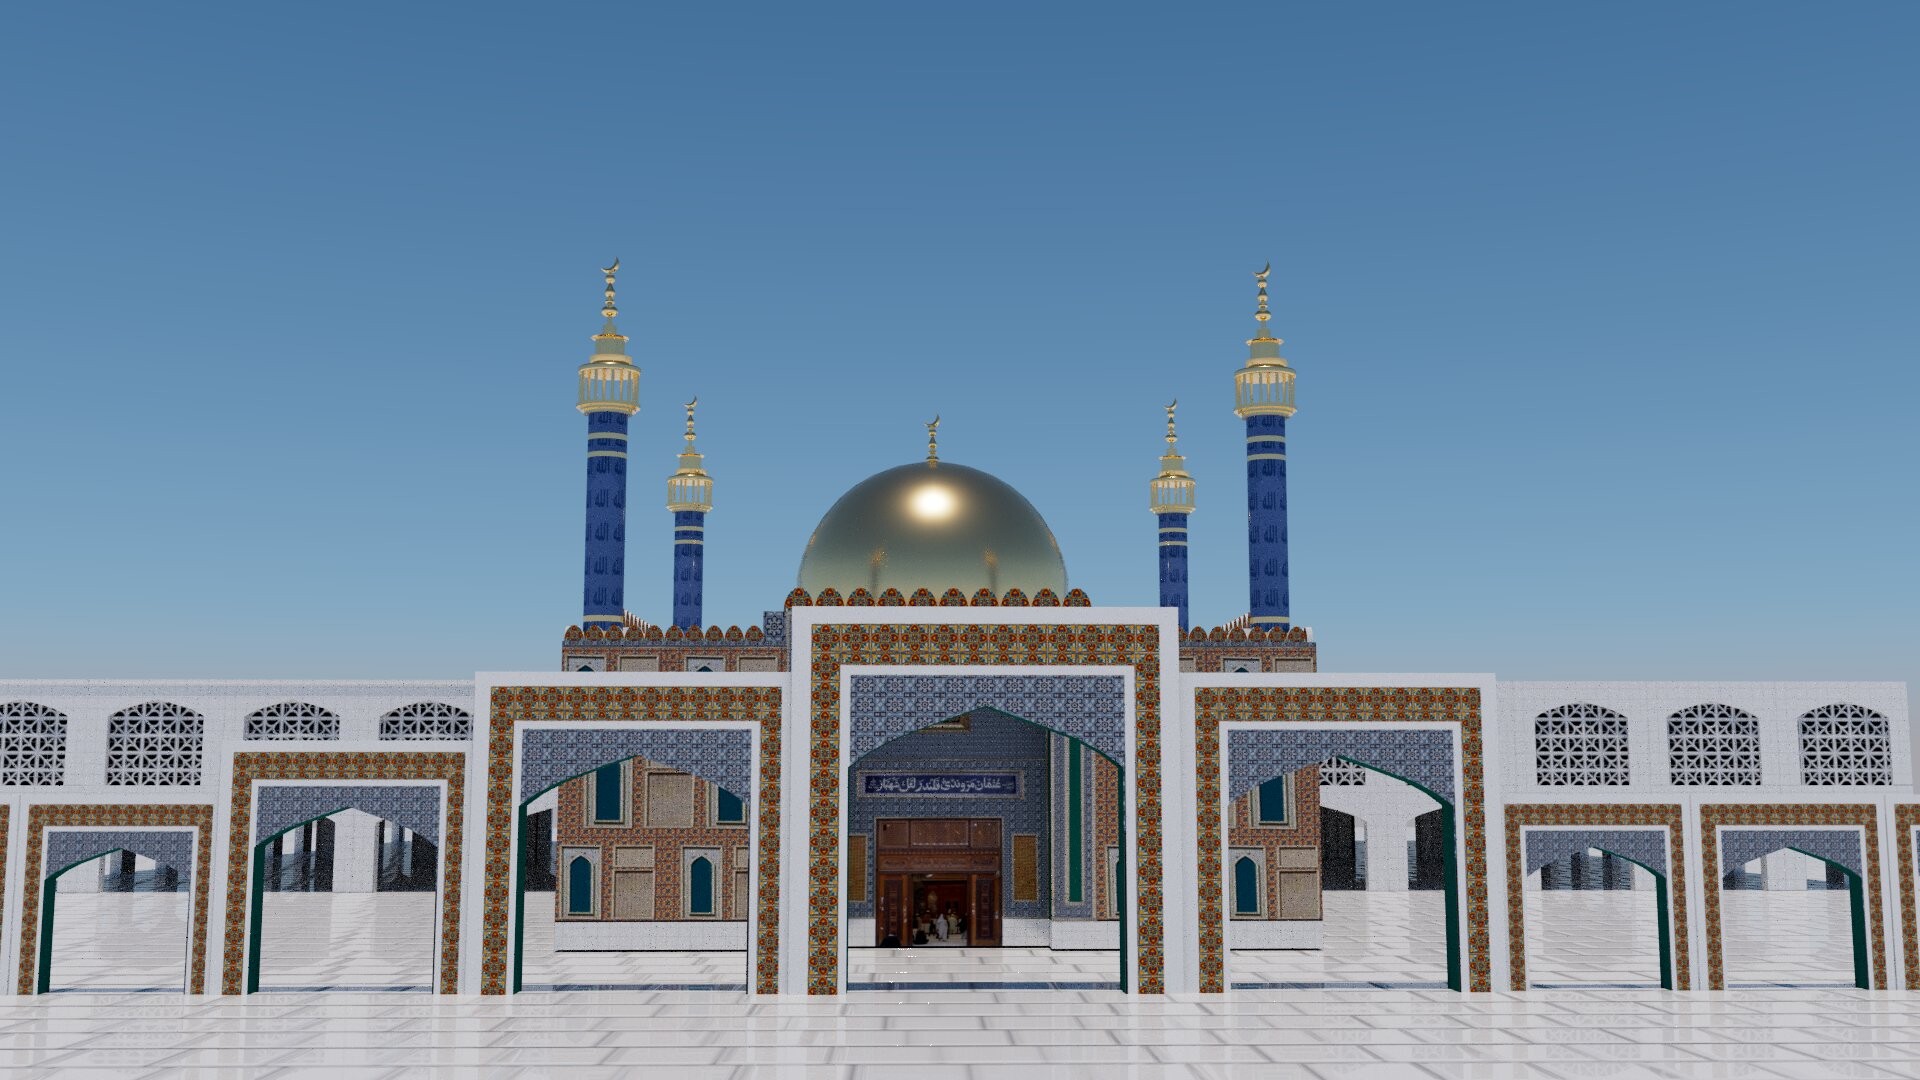 ArtStation - Lal shahbaz qalandar shrine 3D model